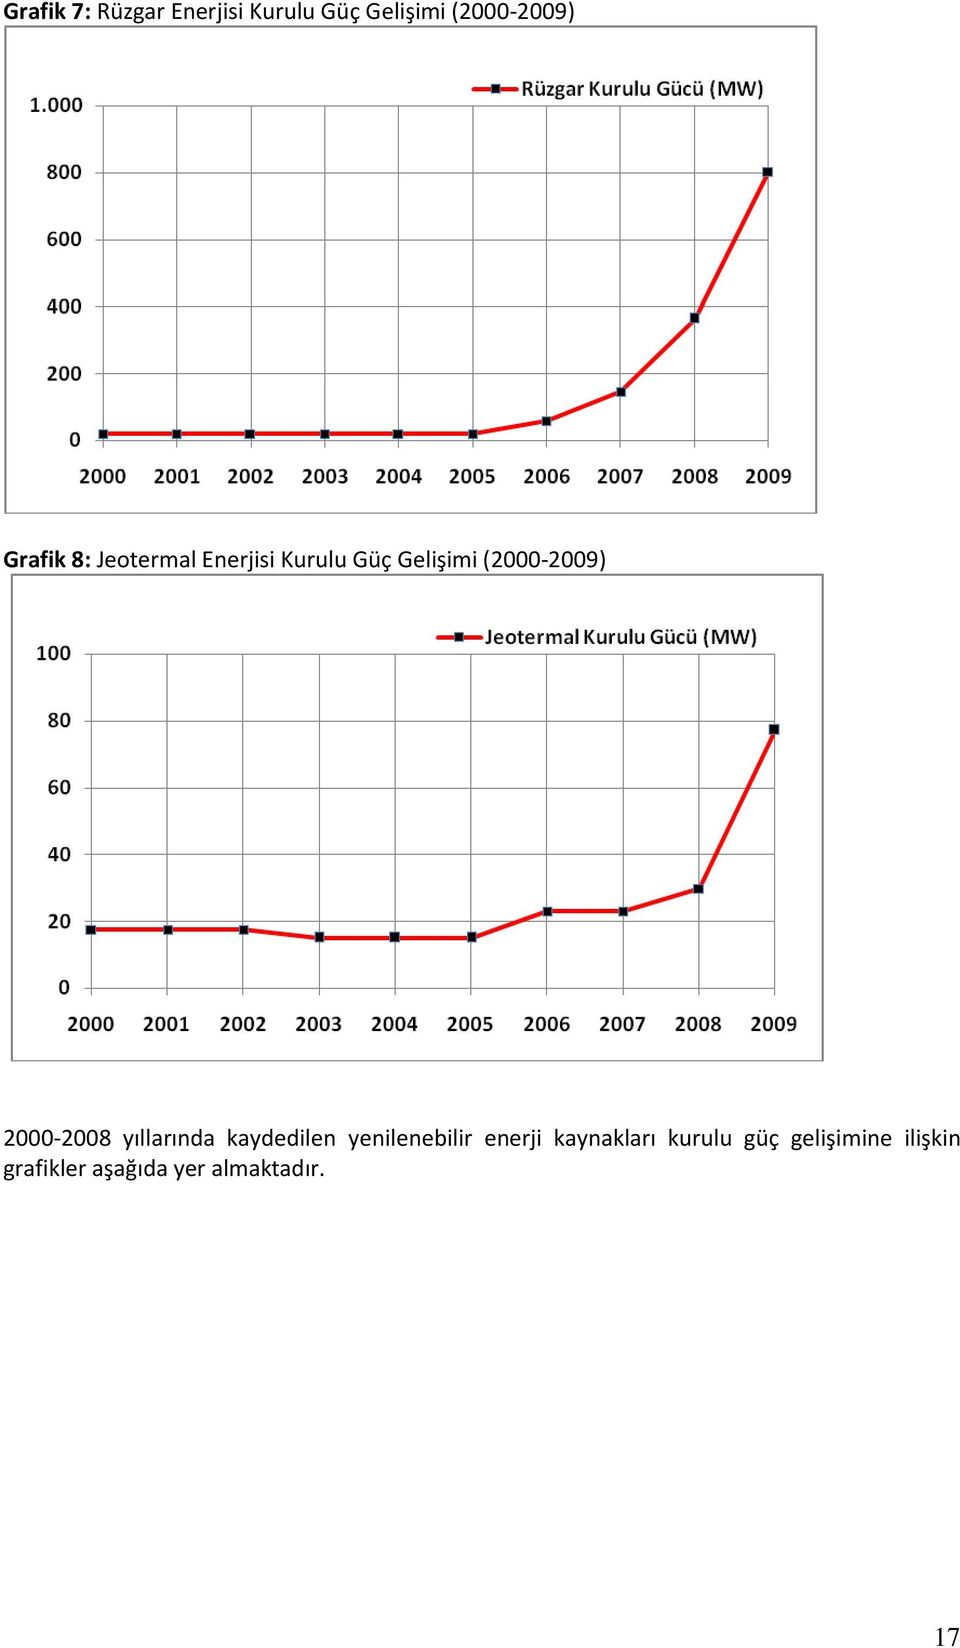 2000-2008 yıllarında kaydedilen yenilenebilir enerji